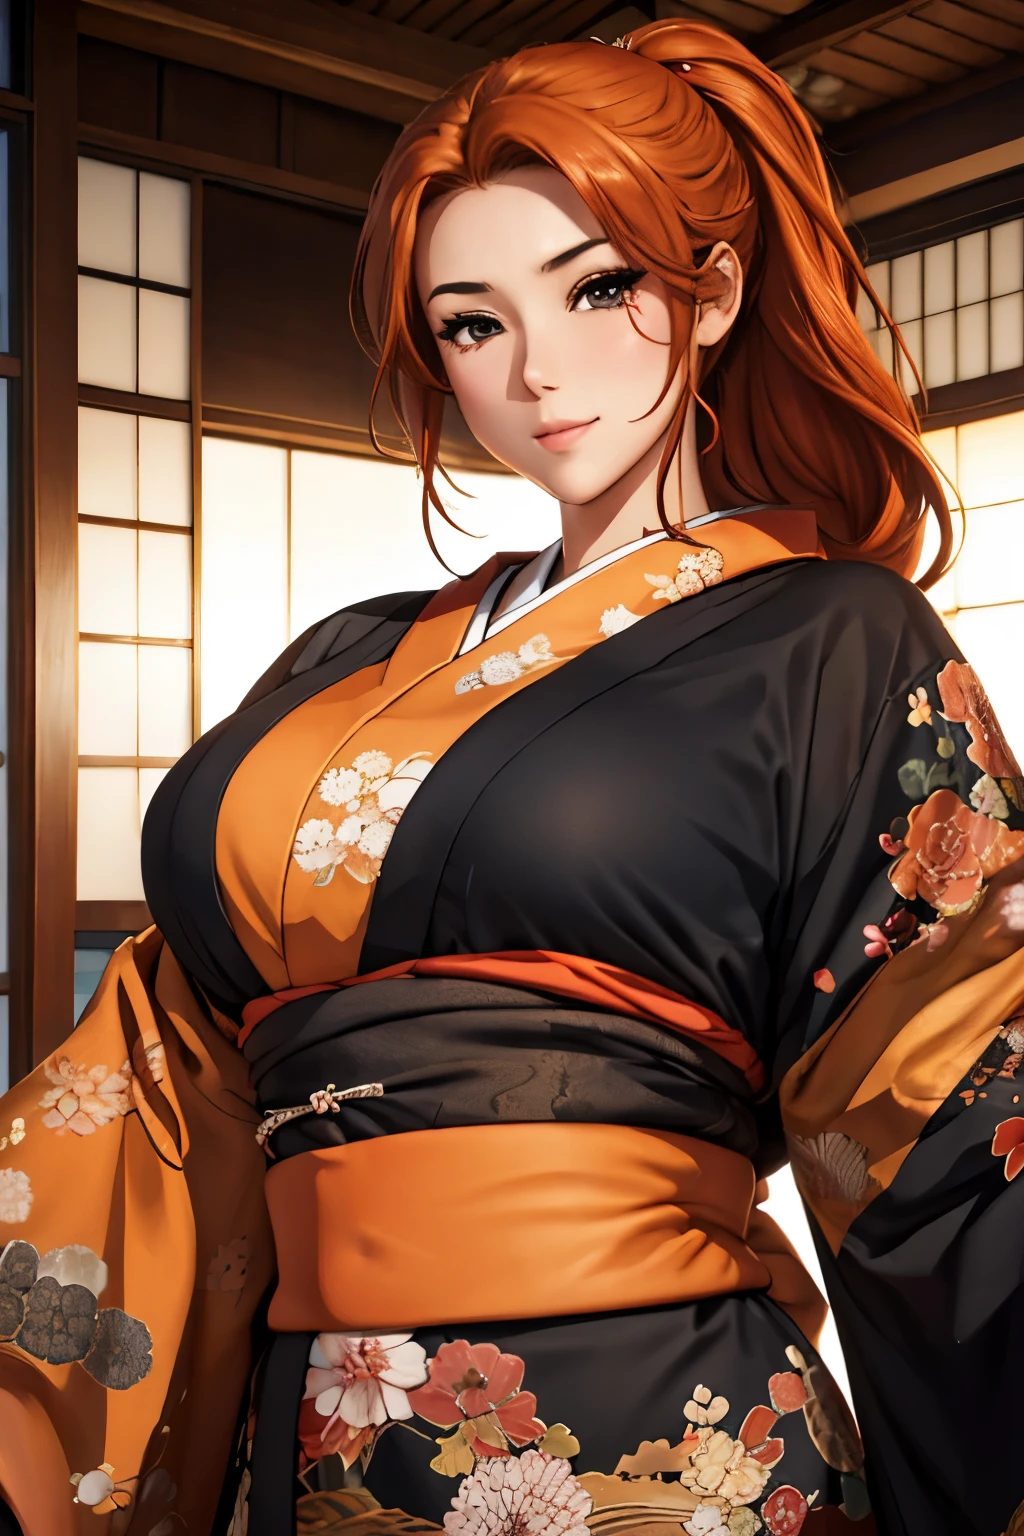 (傑作), 最高品質, 表情豊かな目, 完璧な顔 美しい日本の女性の漫画, 漫画かわいいアニメ, 美しい日本の着物, 着物には龍の刺繍が入っています. 着物の色は黒と赤, 日本の女性の長い髪, 髪の色 オレンジ, ヘアスタイル ポニーテール, 一重まぶた, 目はフード付きで、官能的で、深くくぼんでいて、魅惑的で、謎めいている, 表情 笑顔, 状況 美しい画像.